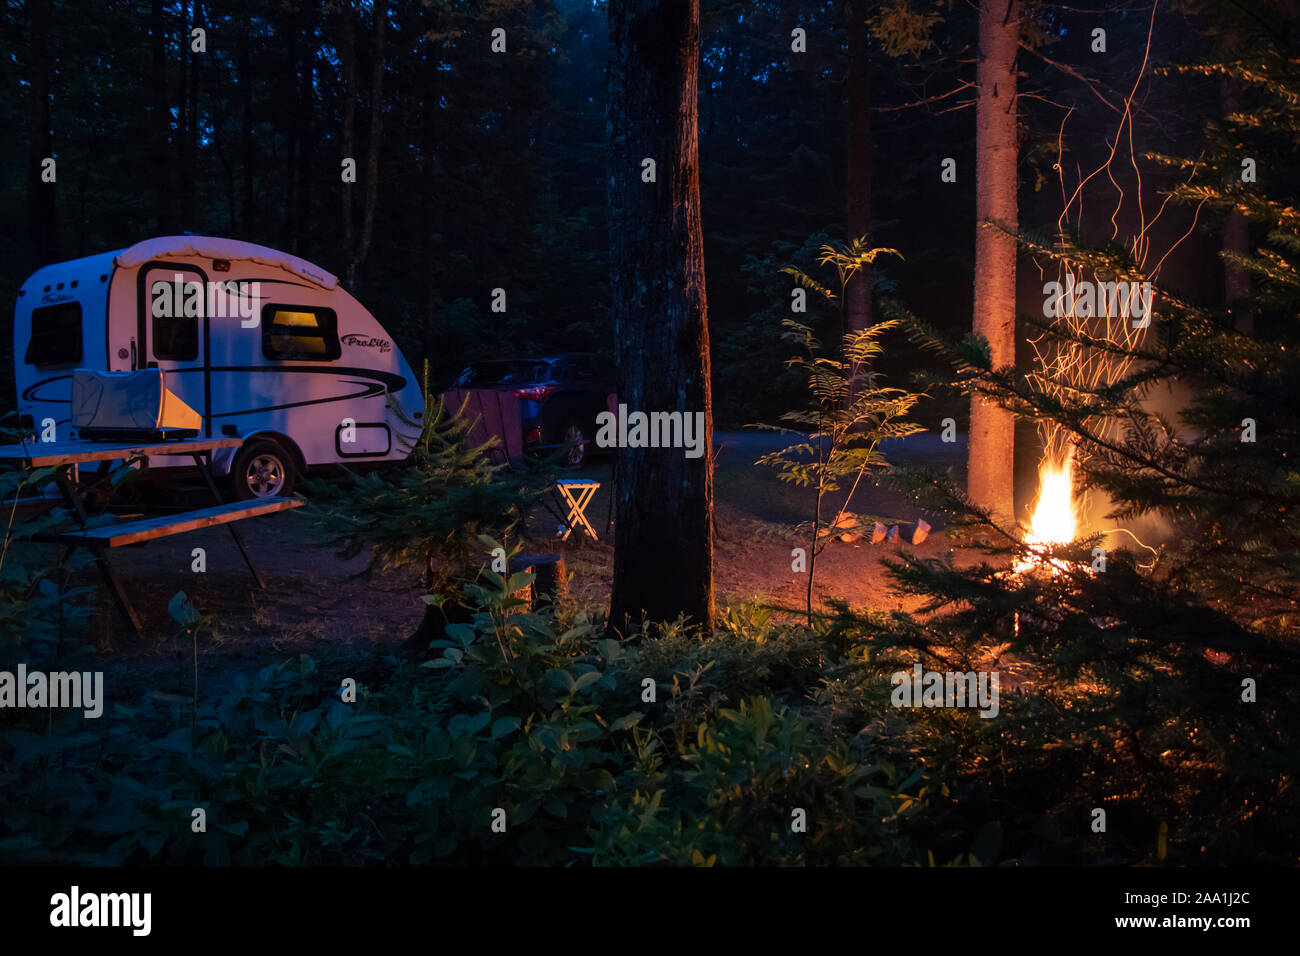 Prolite Eco remorque de voyage légère sur un camping avec un paysage de nuit, le camping du parc, de la Mauricie : Juin 29, 2019 - Saint-Mathieu du Parc, Québec Banque D'Images